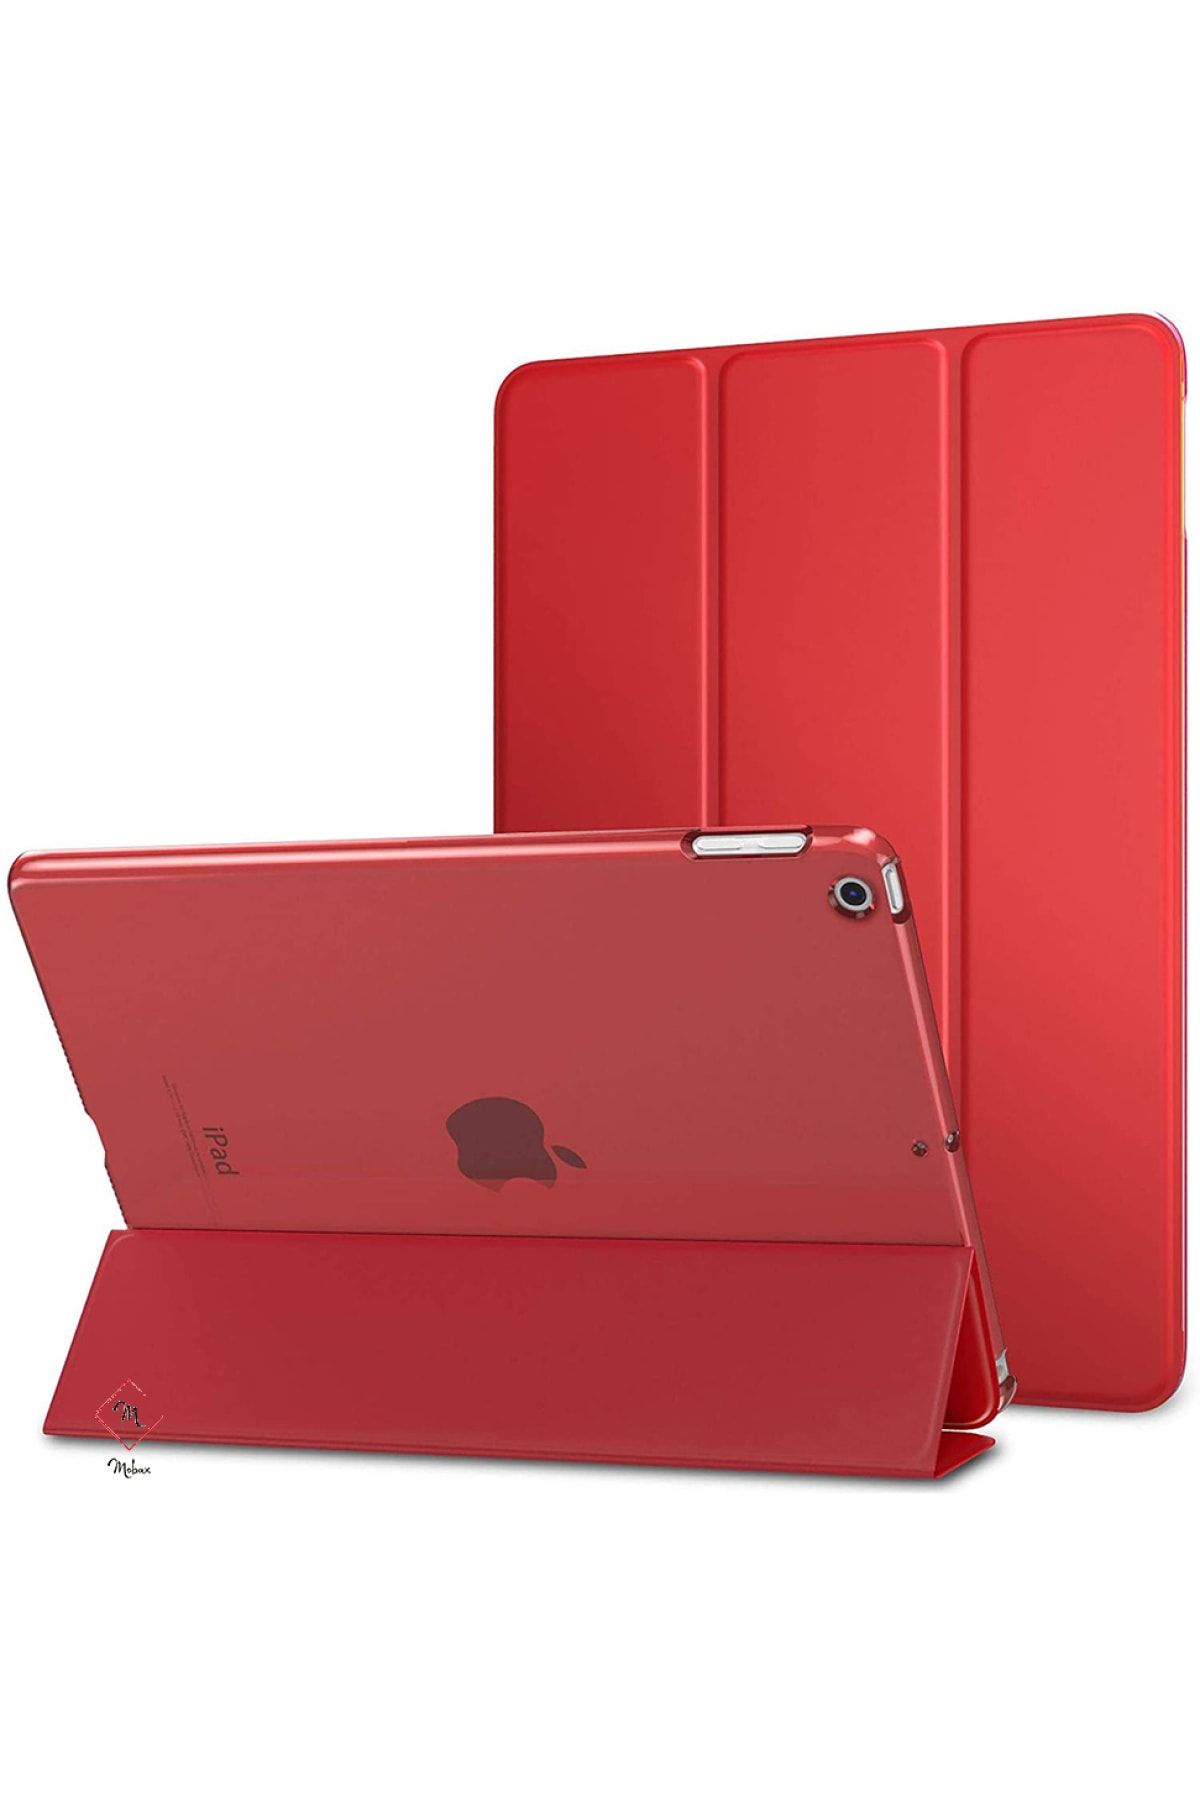 MOBAX Apple Ipad Pro 11 Kılıf Pu Deri Smart Case A1980 A2013 A1934 A1979 Kırmızı